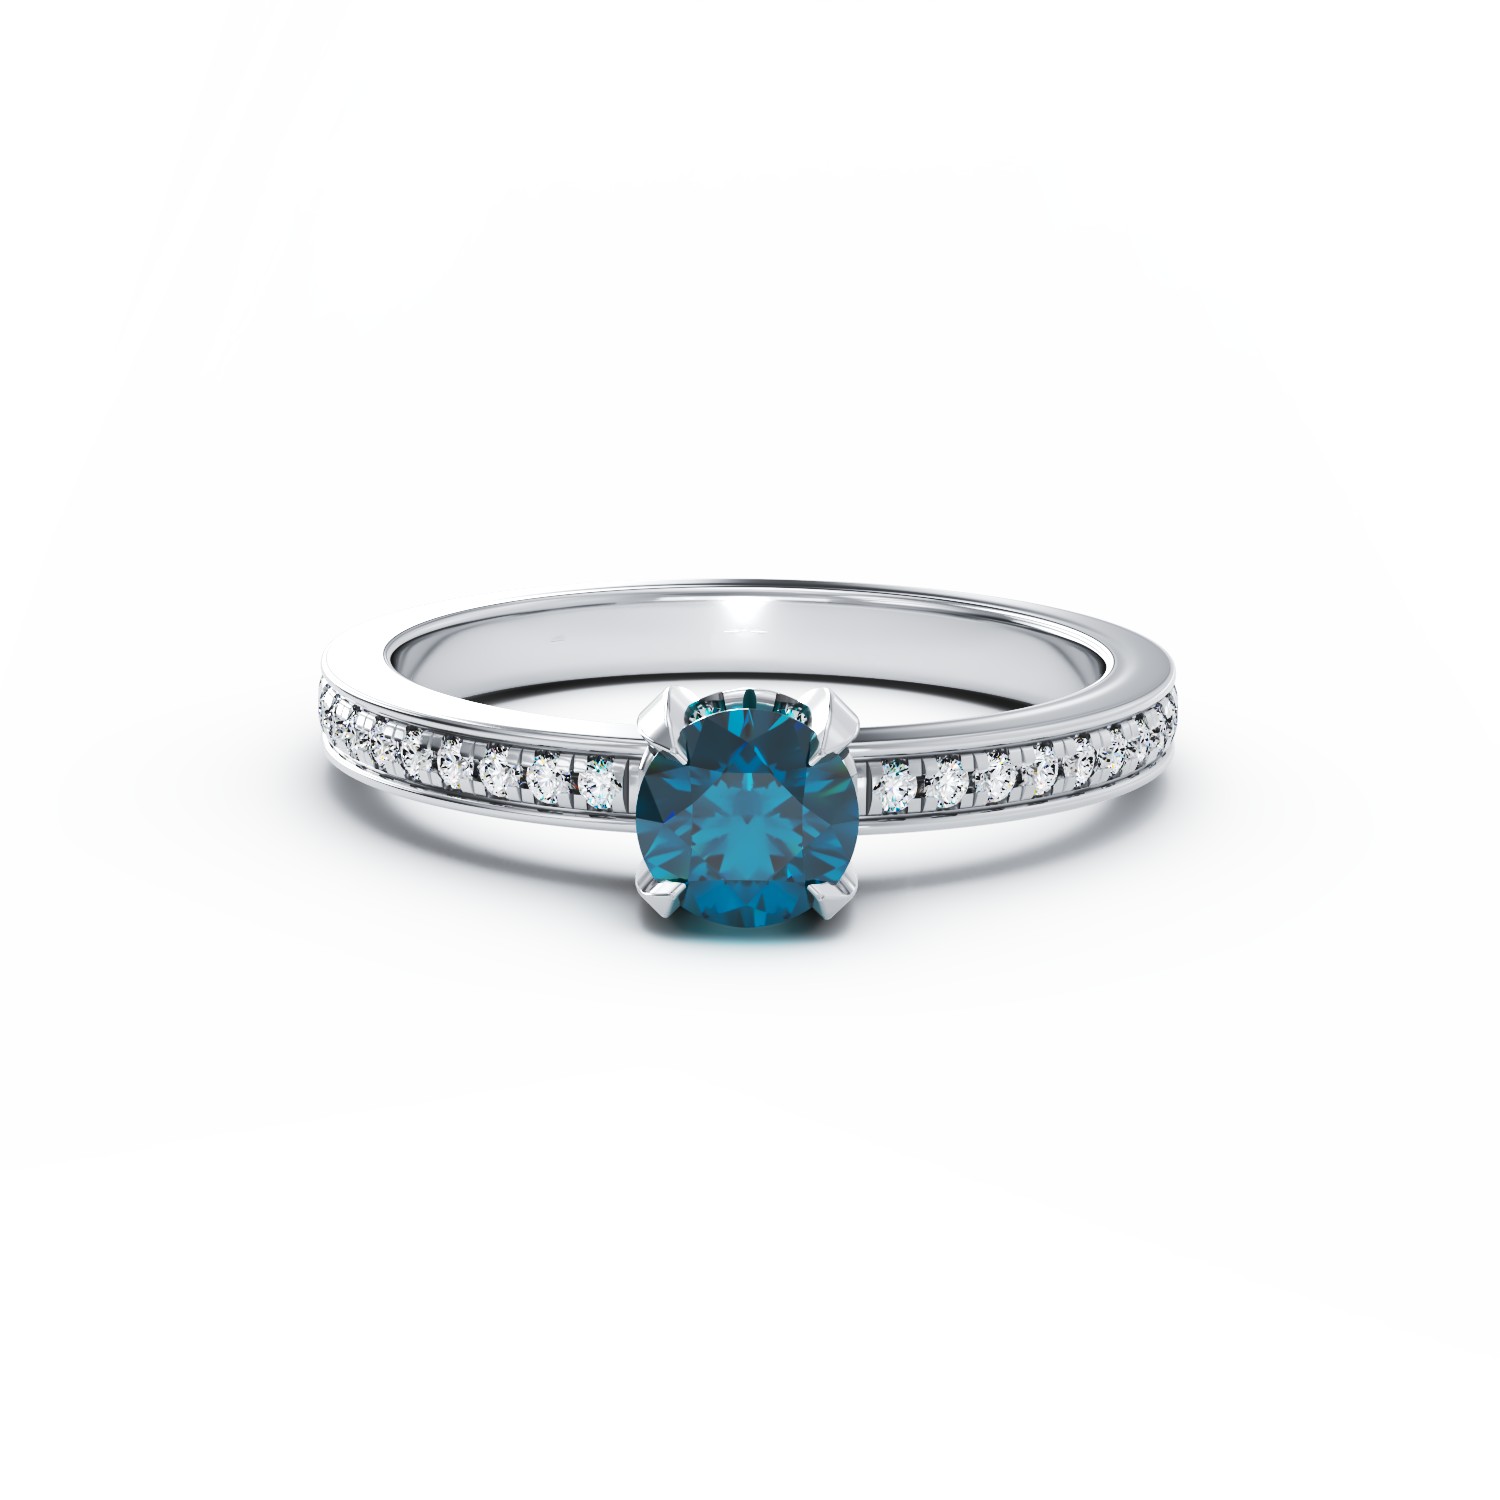 18 karátos fehérarany eljegyzési gyűrű 0.39 karátos kék gyémánttal és 0.2 karátos gyémántokkal